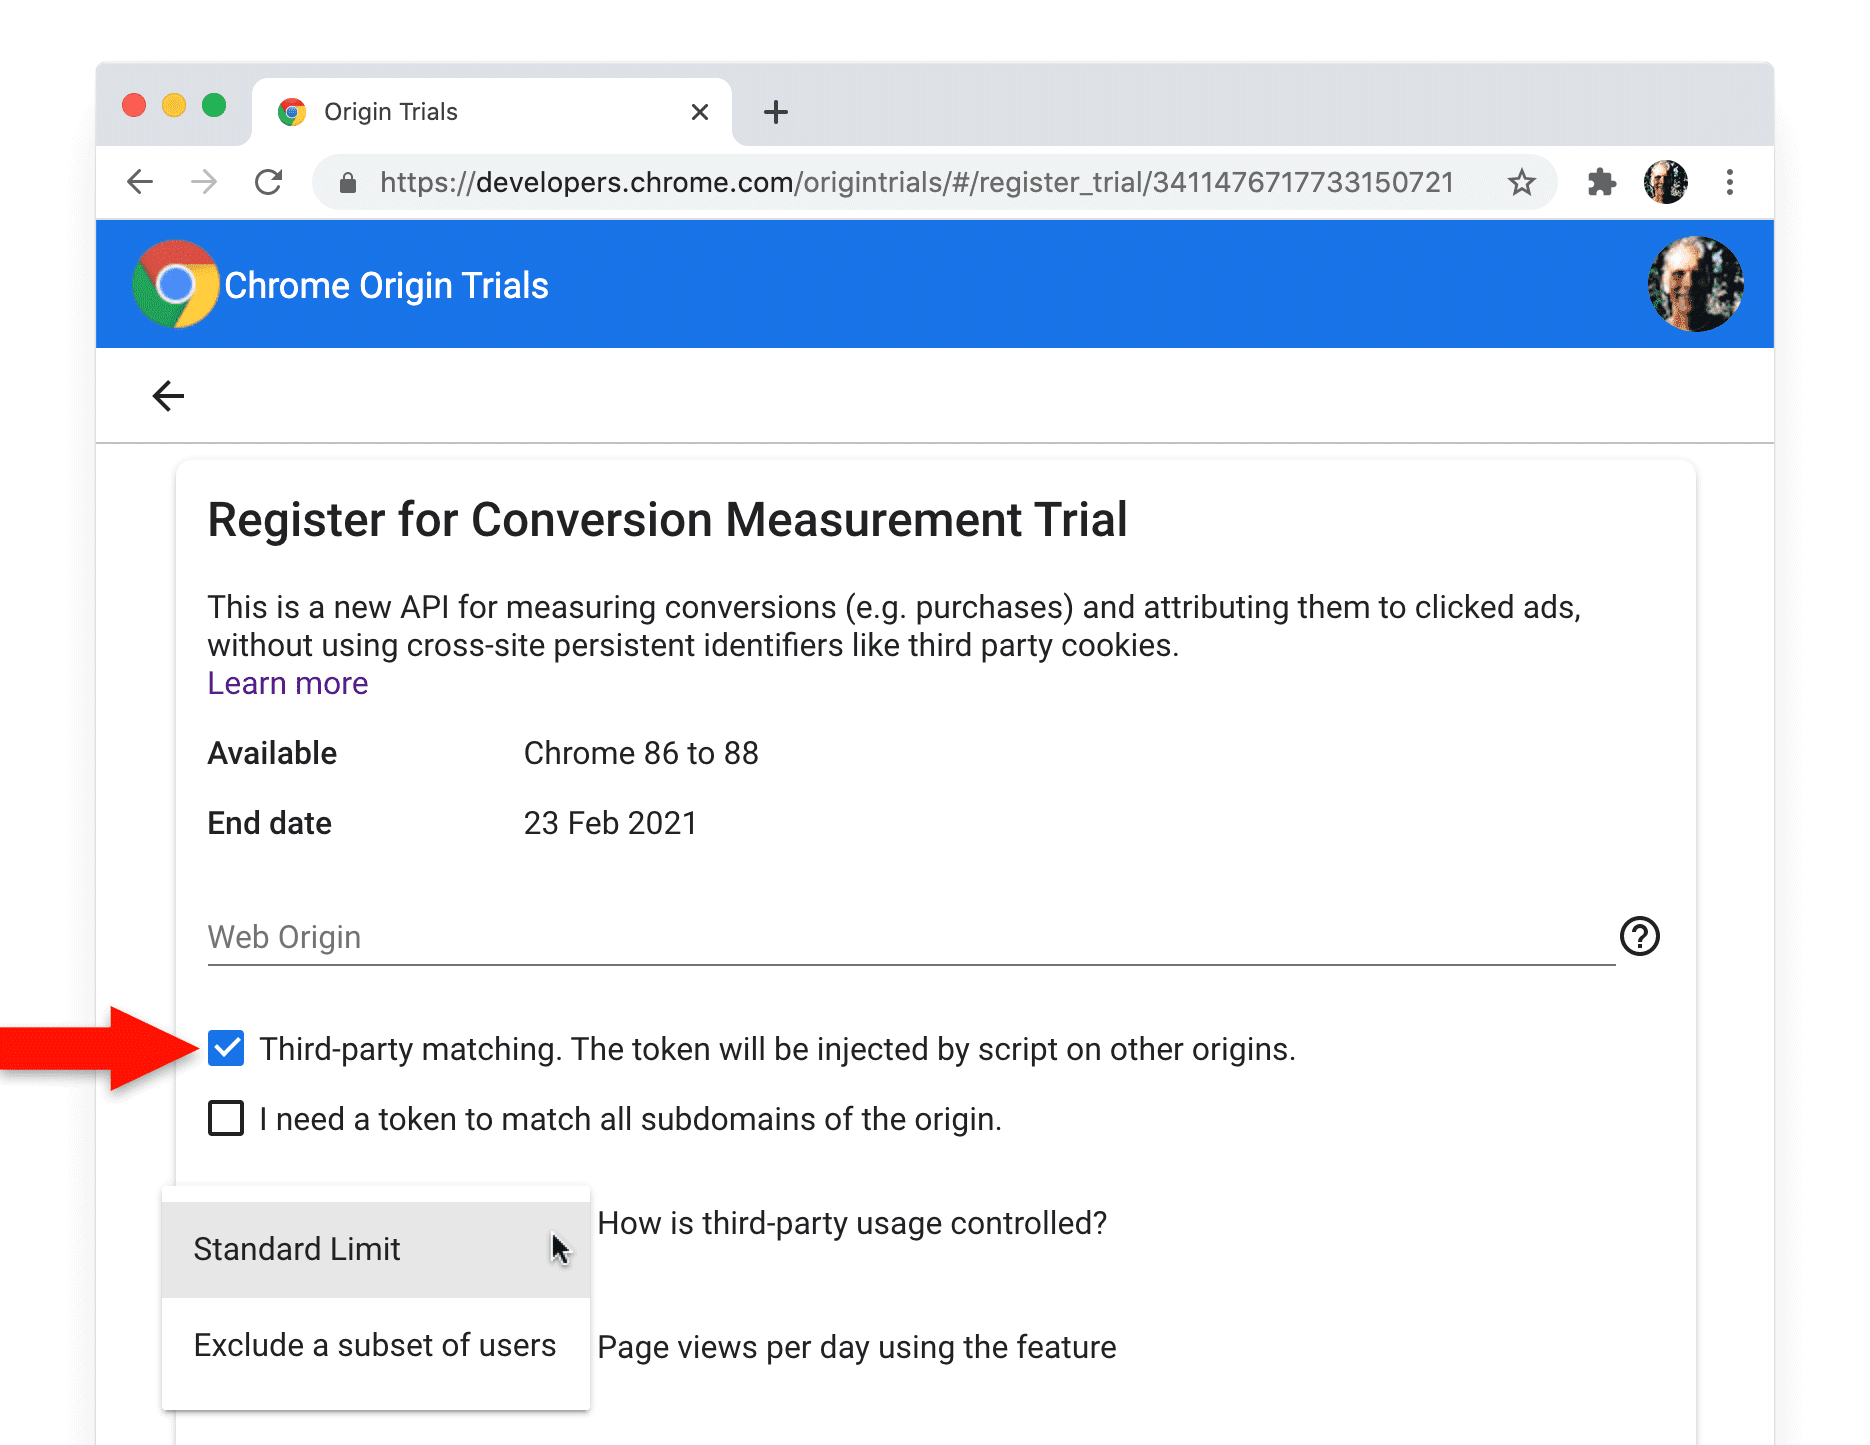 Strona rejestracji wersji próbnej origin Chrome na potrzeby interfejsu Conversion Measurement API z zaznaczonym polem wyboru dopasowania zewnętrznego.